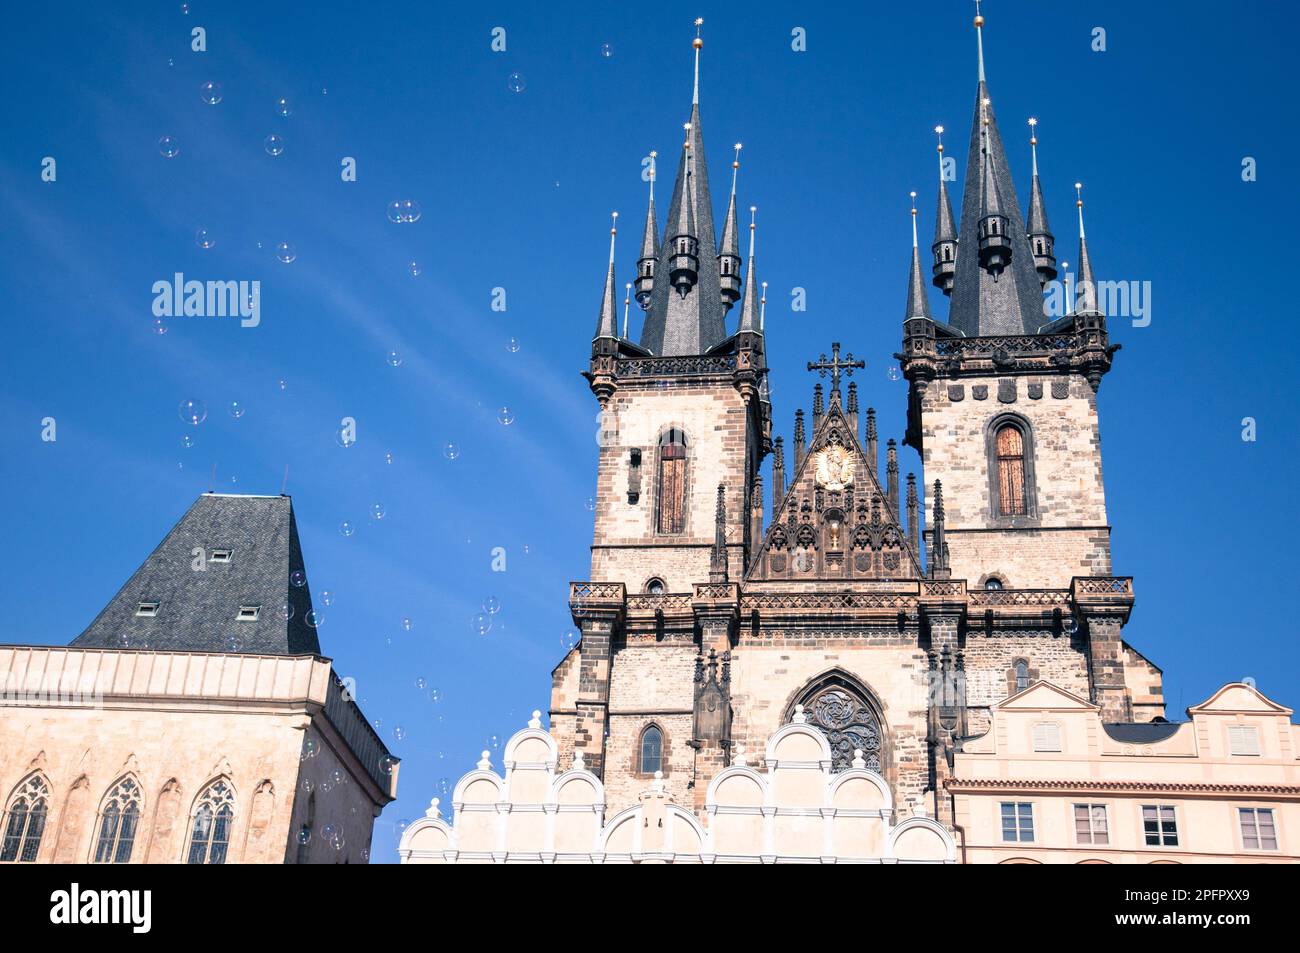 Tschechische republik, Prag. Das politische und kulturelle Zentrum Böhmens und des tschechischen Staates. Credits: Andrea Pinna Stockfoto